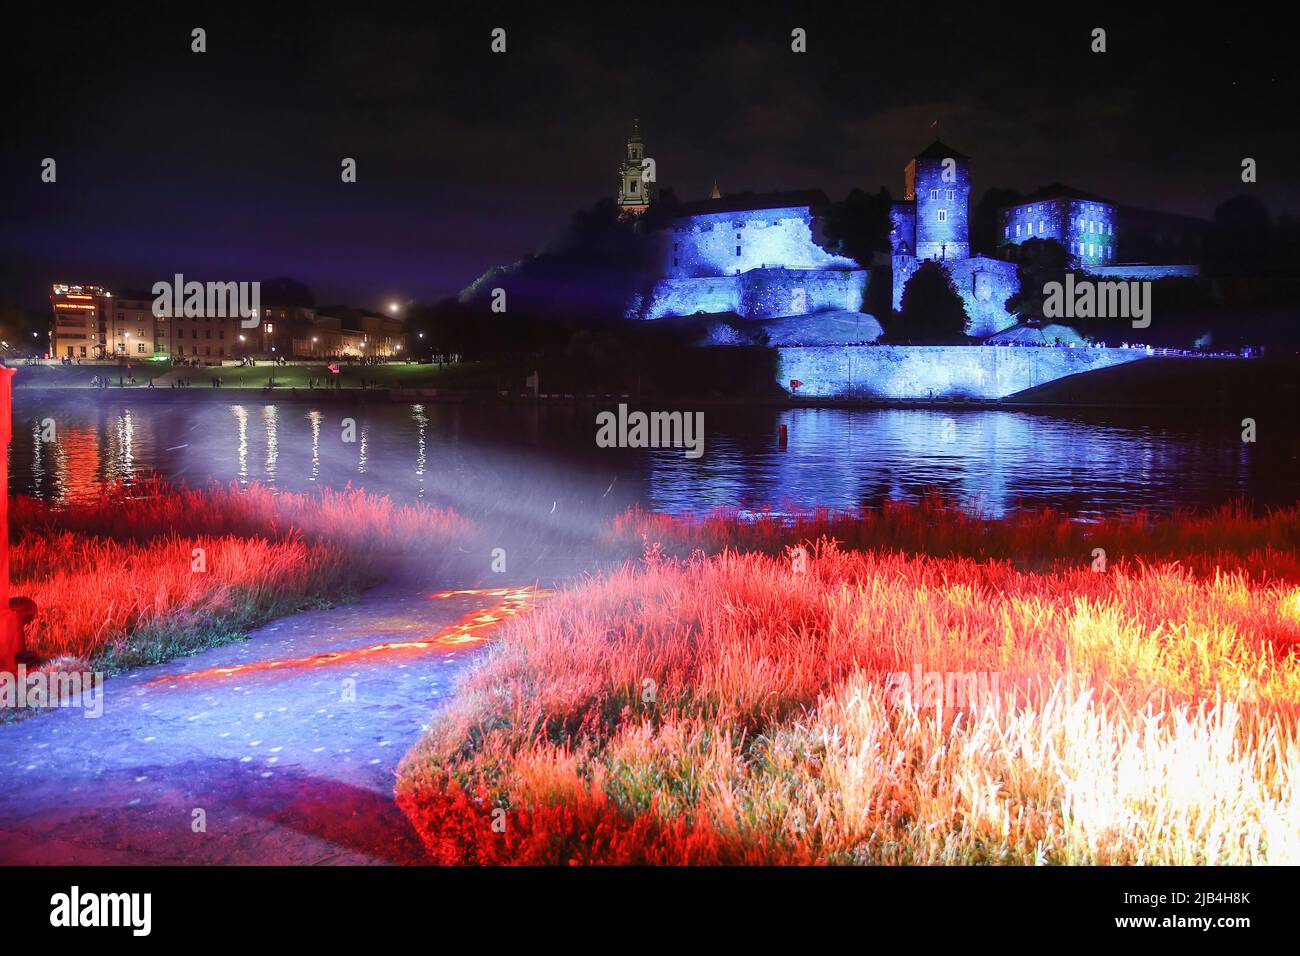 Una vista notturna del Castello di Wawel illuminata con temi dal programma televisivo 'stranger Things', come parte di una campagna promozionale per l'ultima stagione. Foto Stock